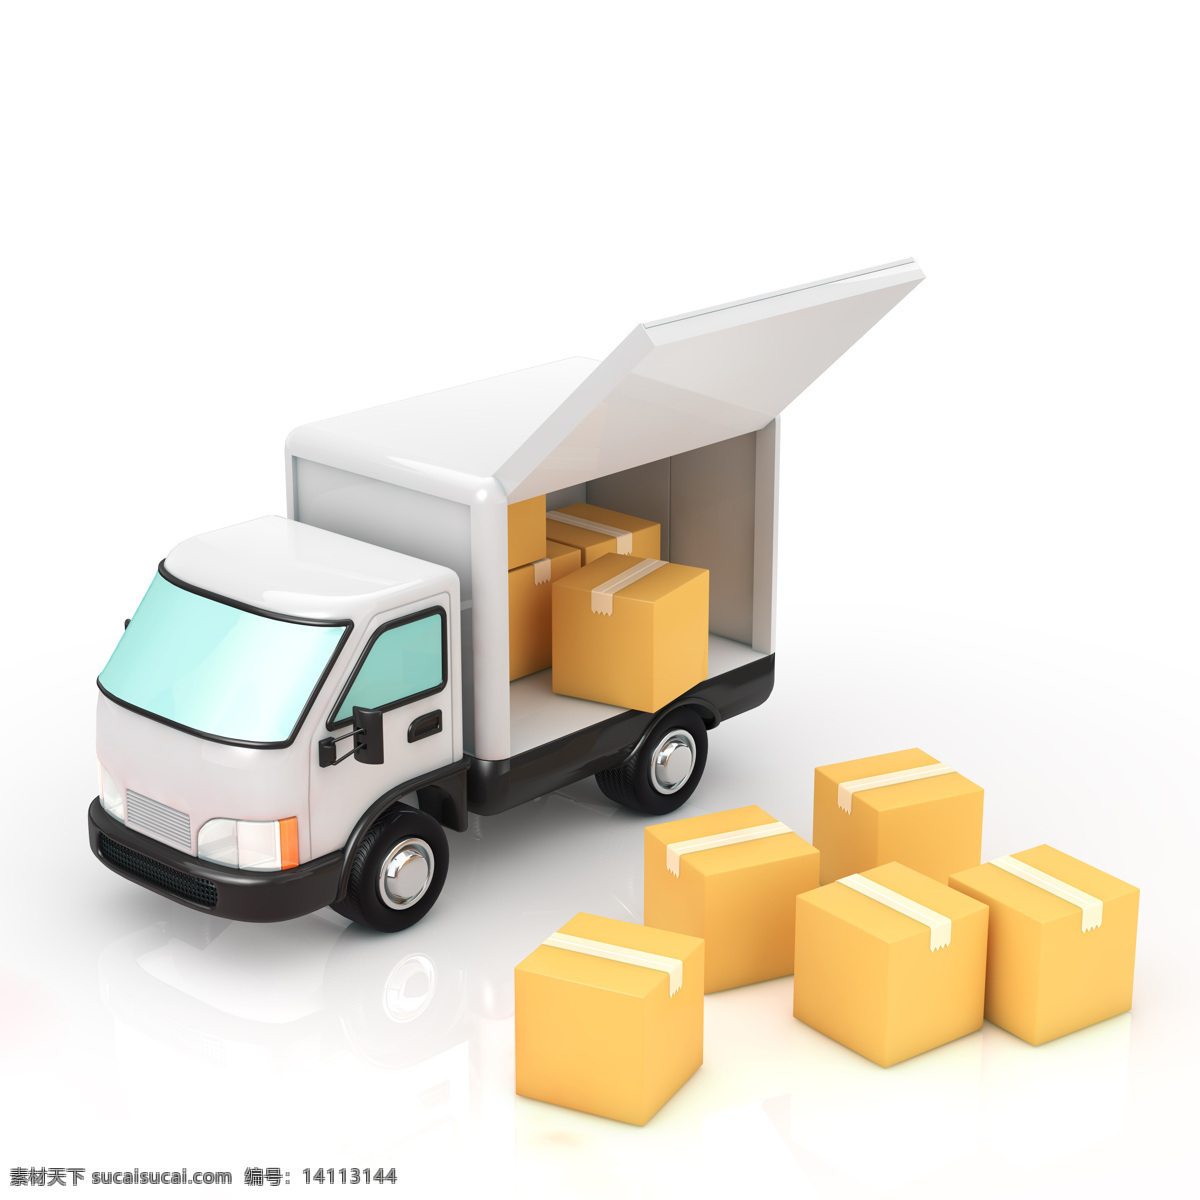 送货 汽车 货车 卡车 箱子 纸箱 交通工具 汽车图片 现代科技